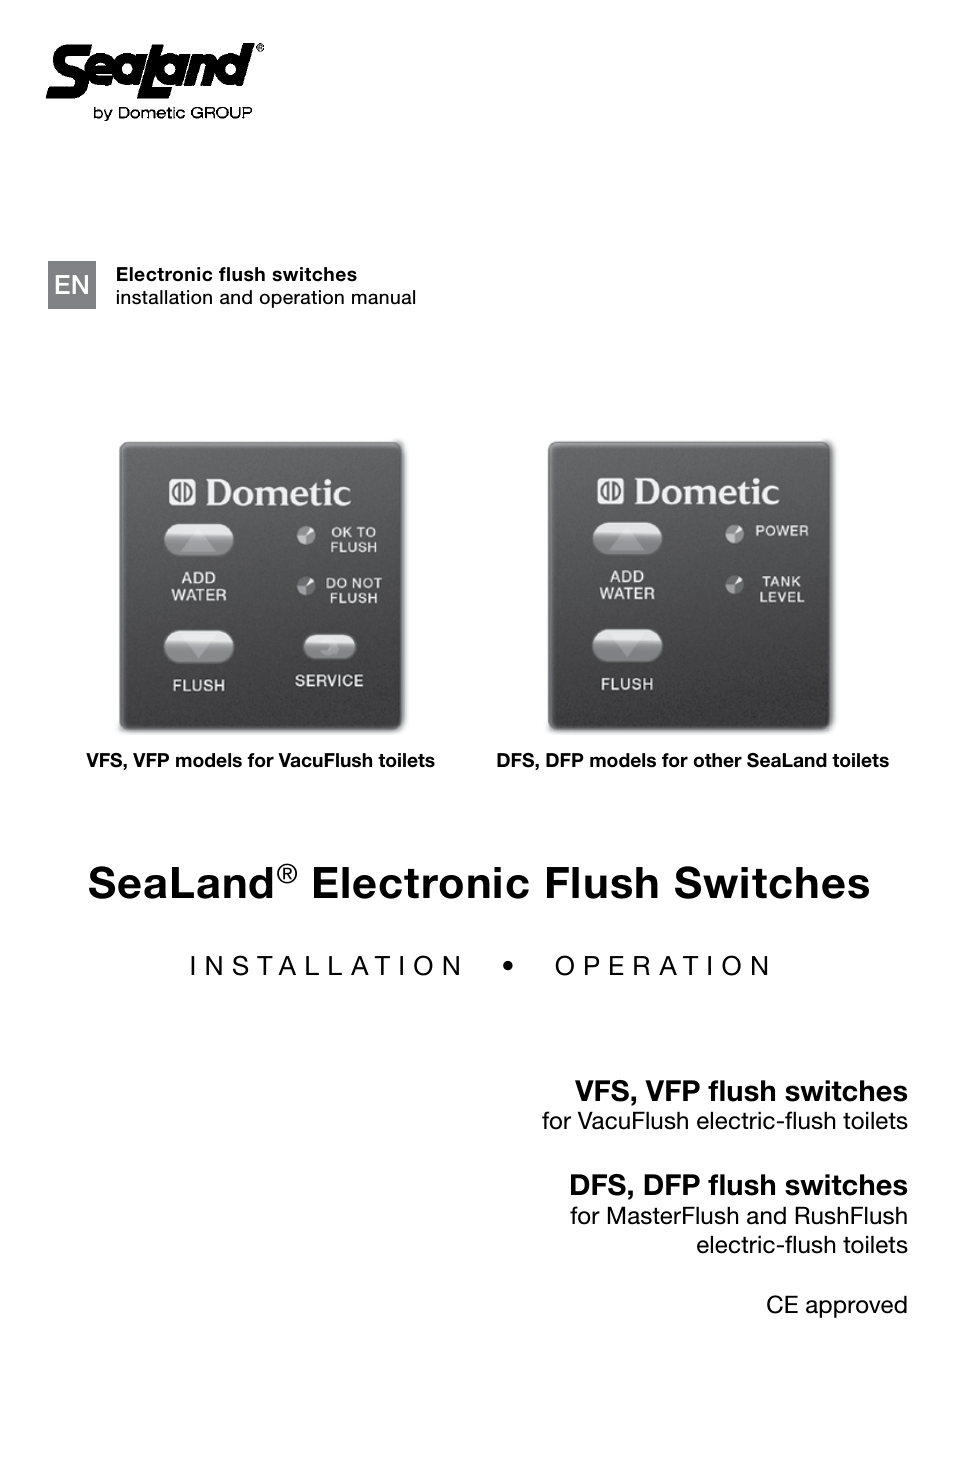 VFS flush switches